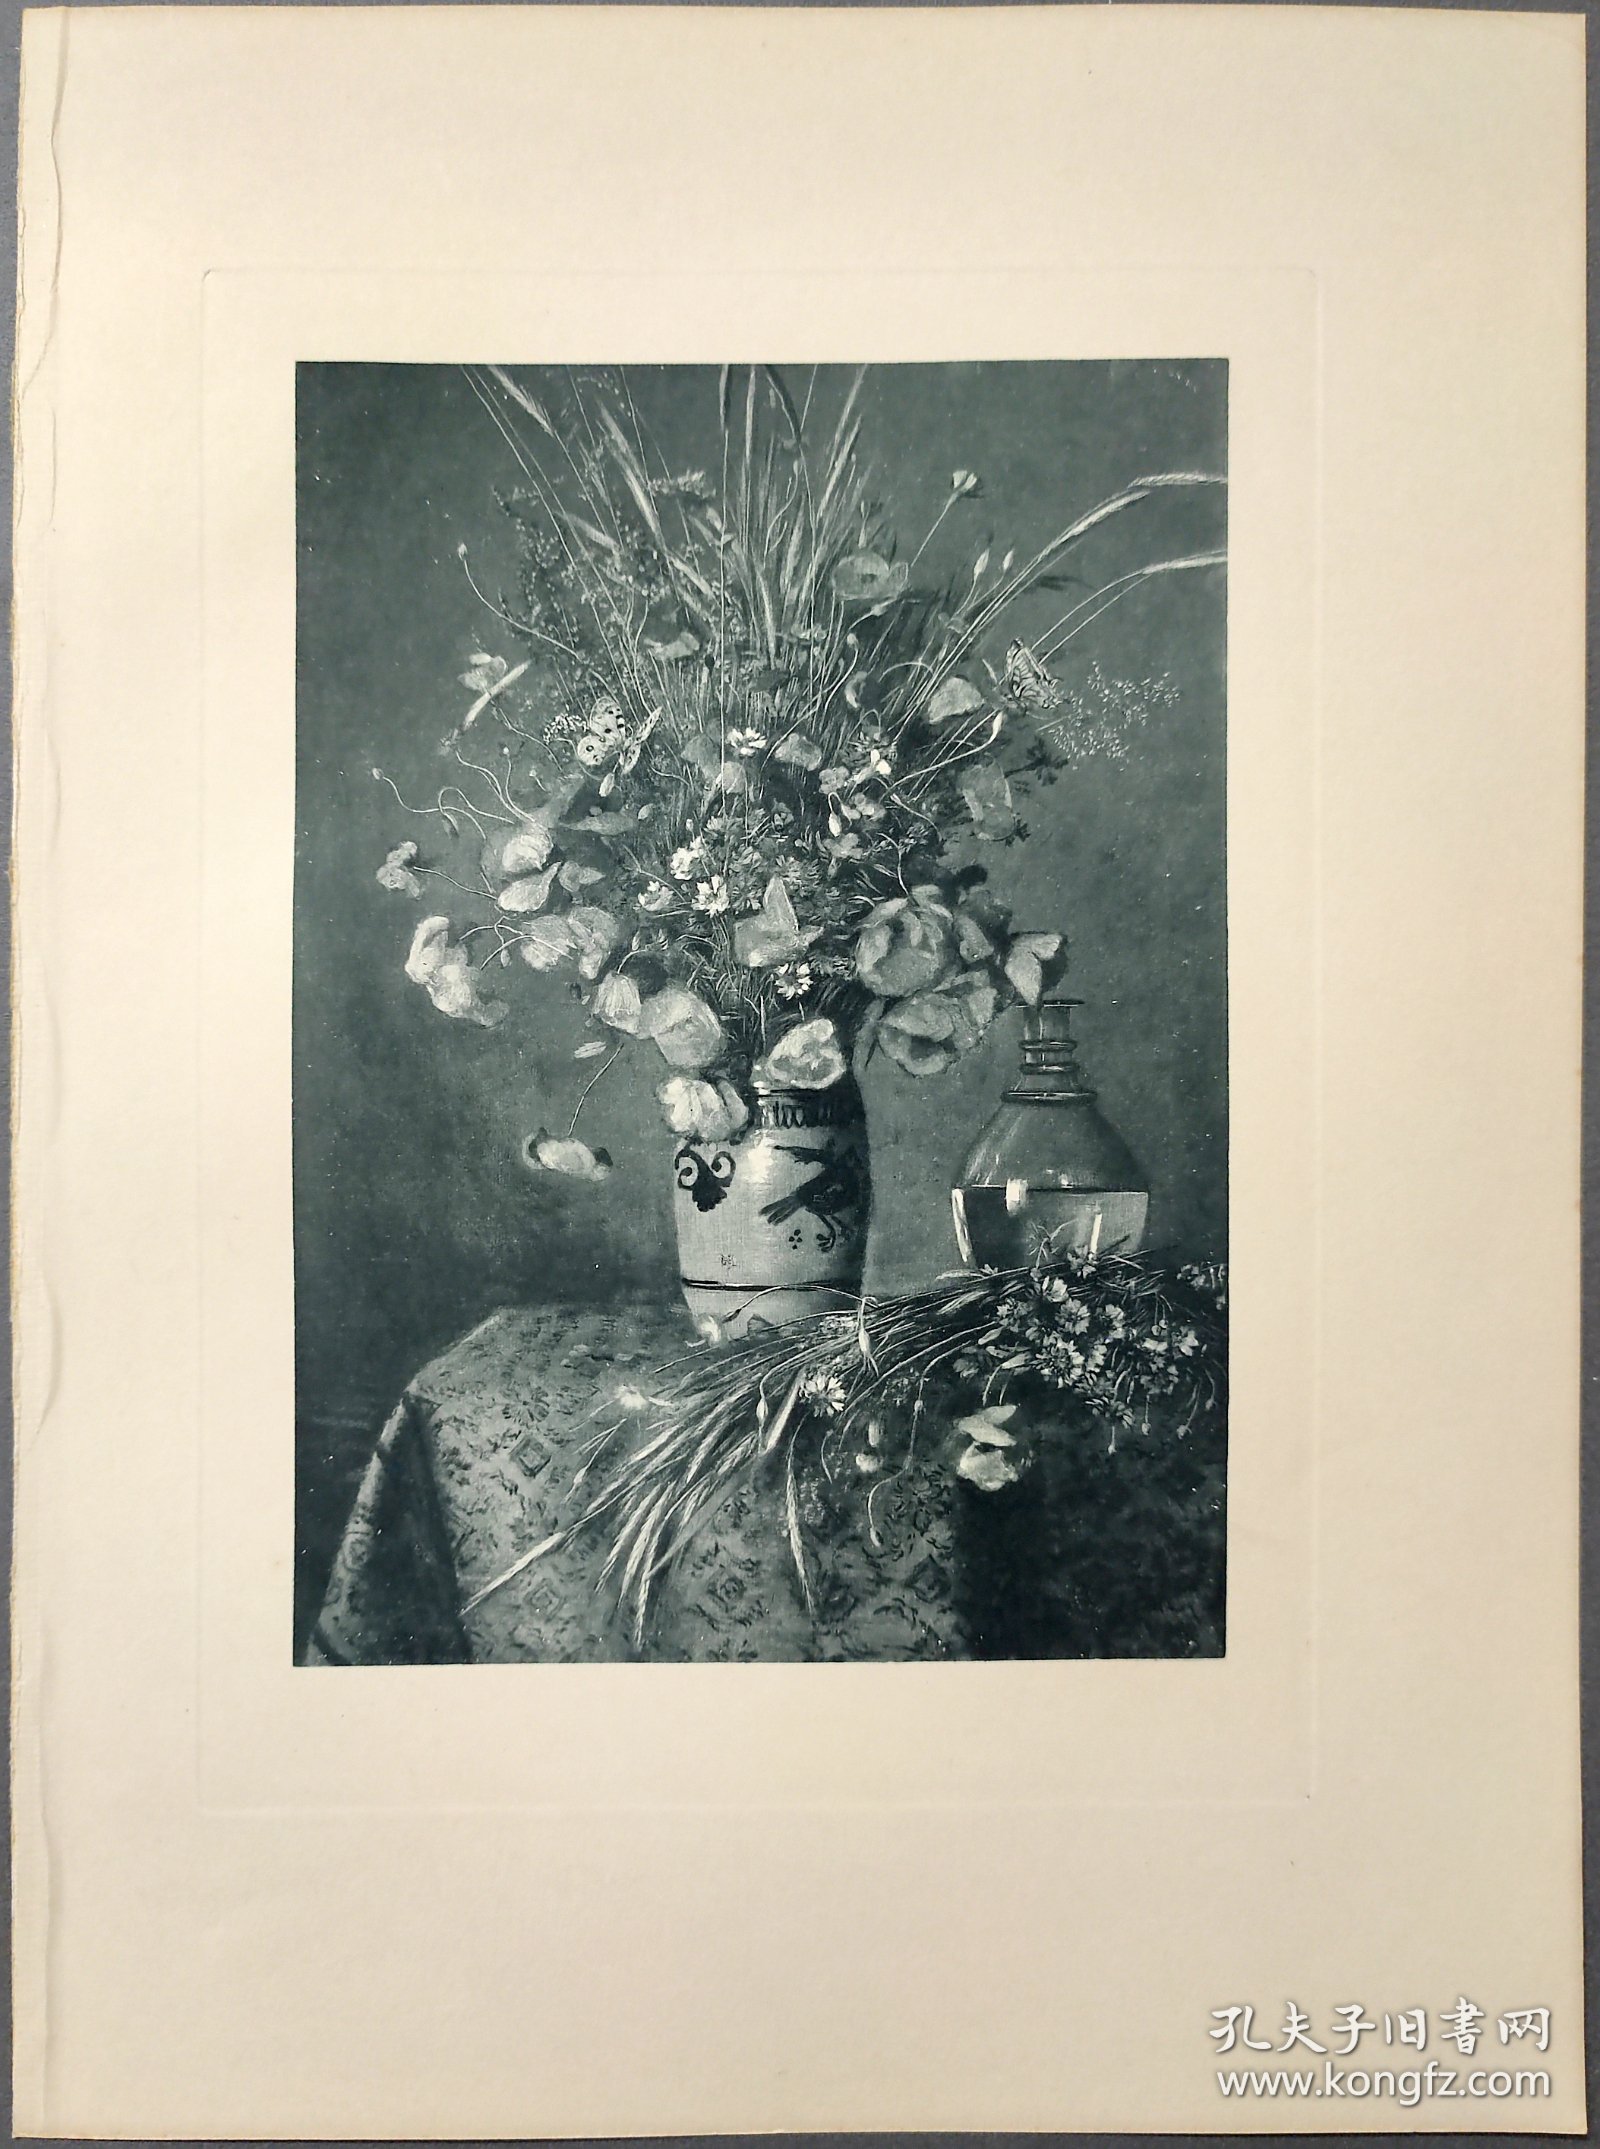 【汉斯·托马】1922年 铜版画 照相凹版《罂粟花 mohn》附资料页，汉斯·托马（Hans Thoma）德国画家